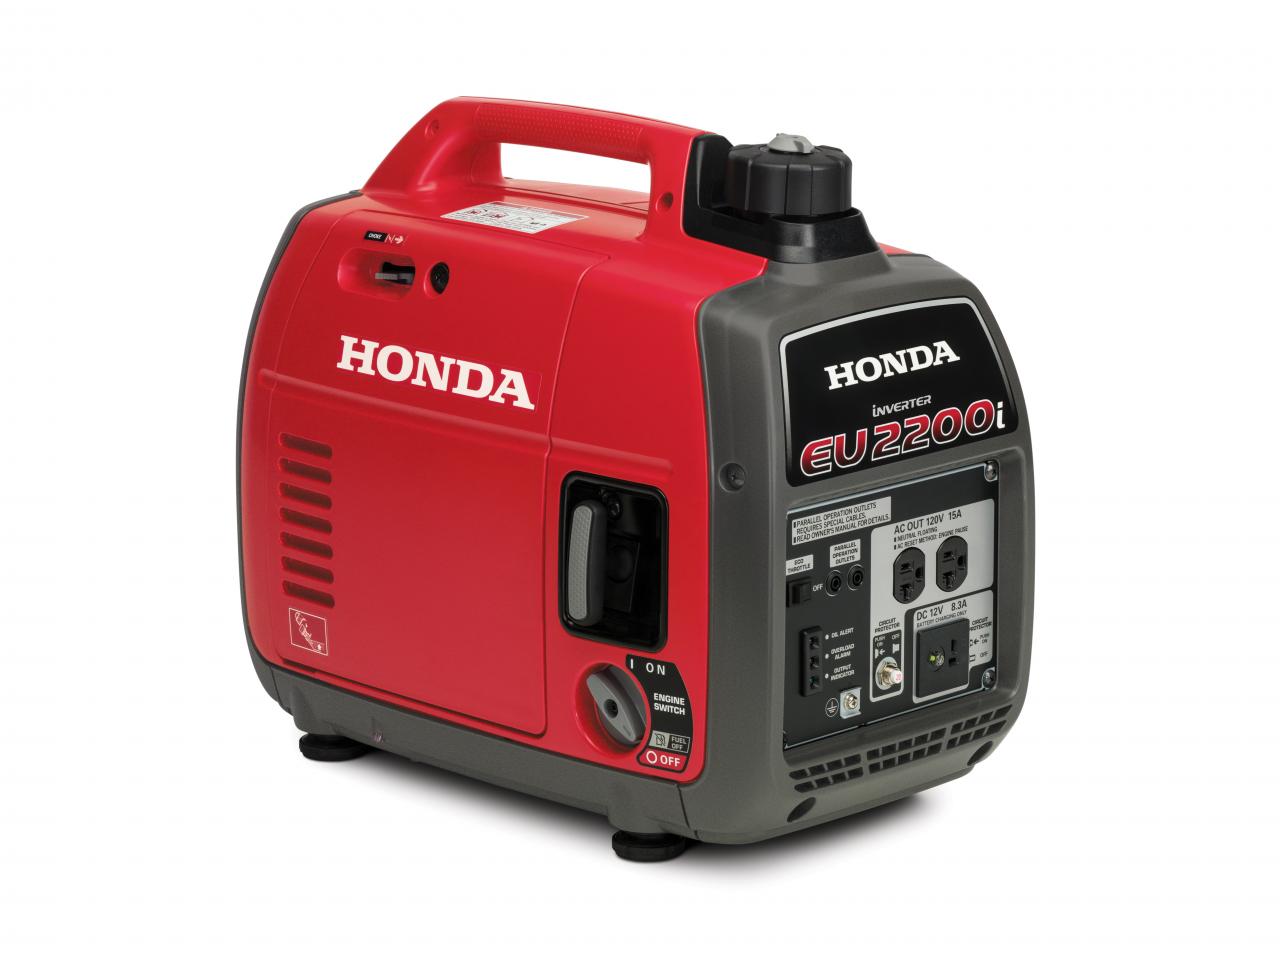 Honda EU2200i Quiet 1800/2200W Inverter Generator: Spec Review & Deals